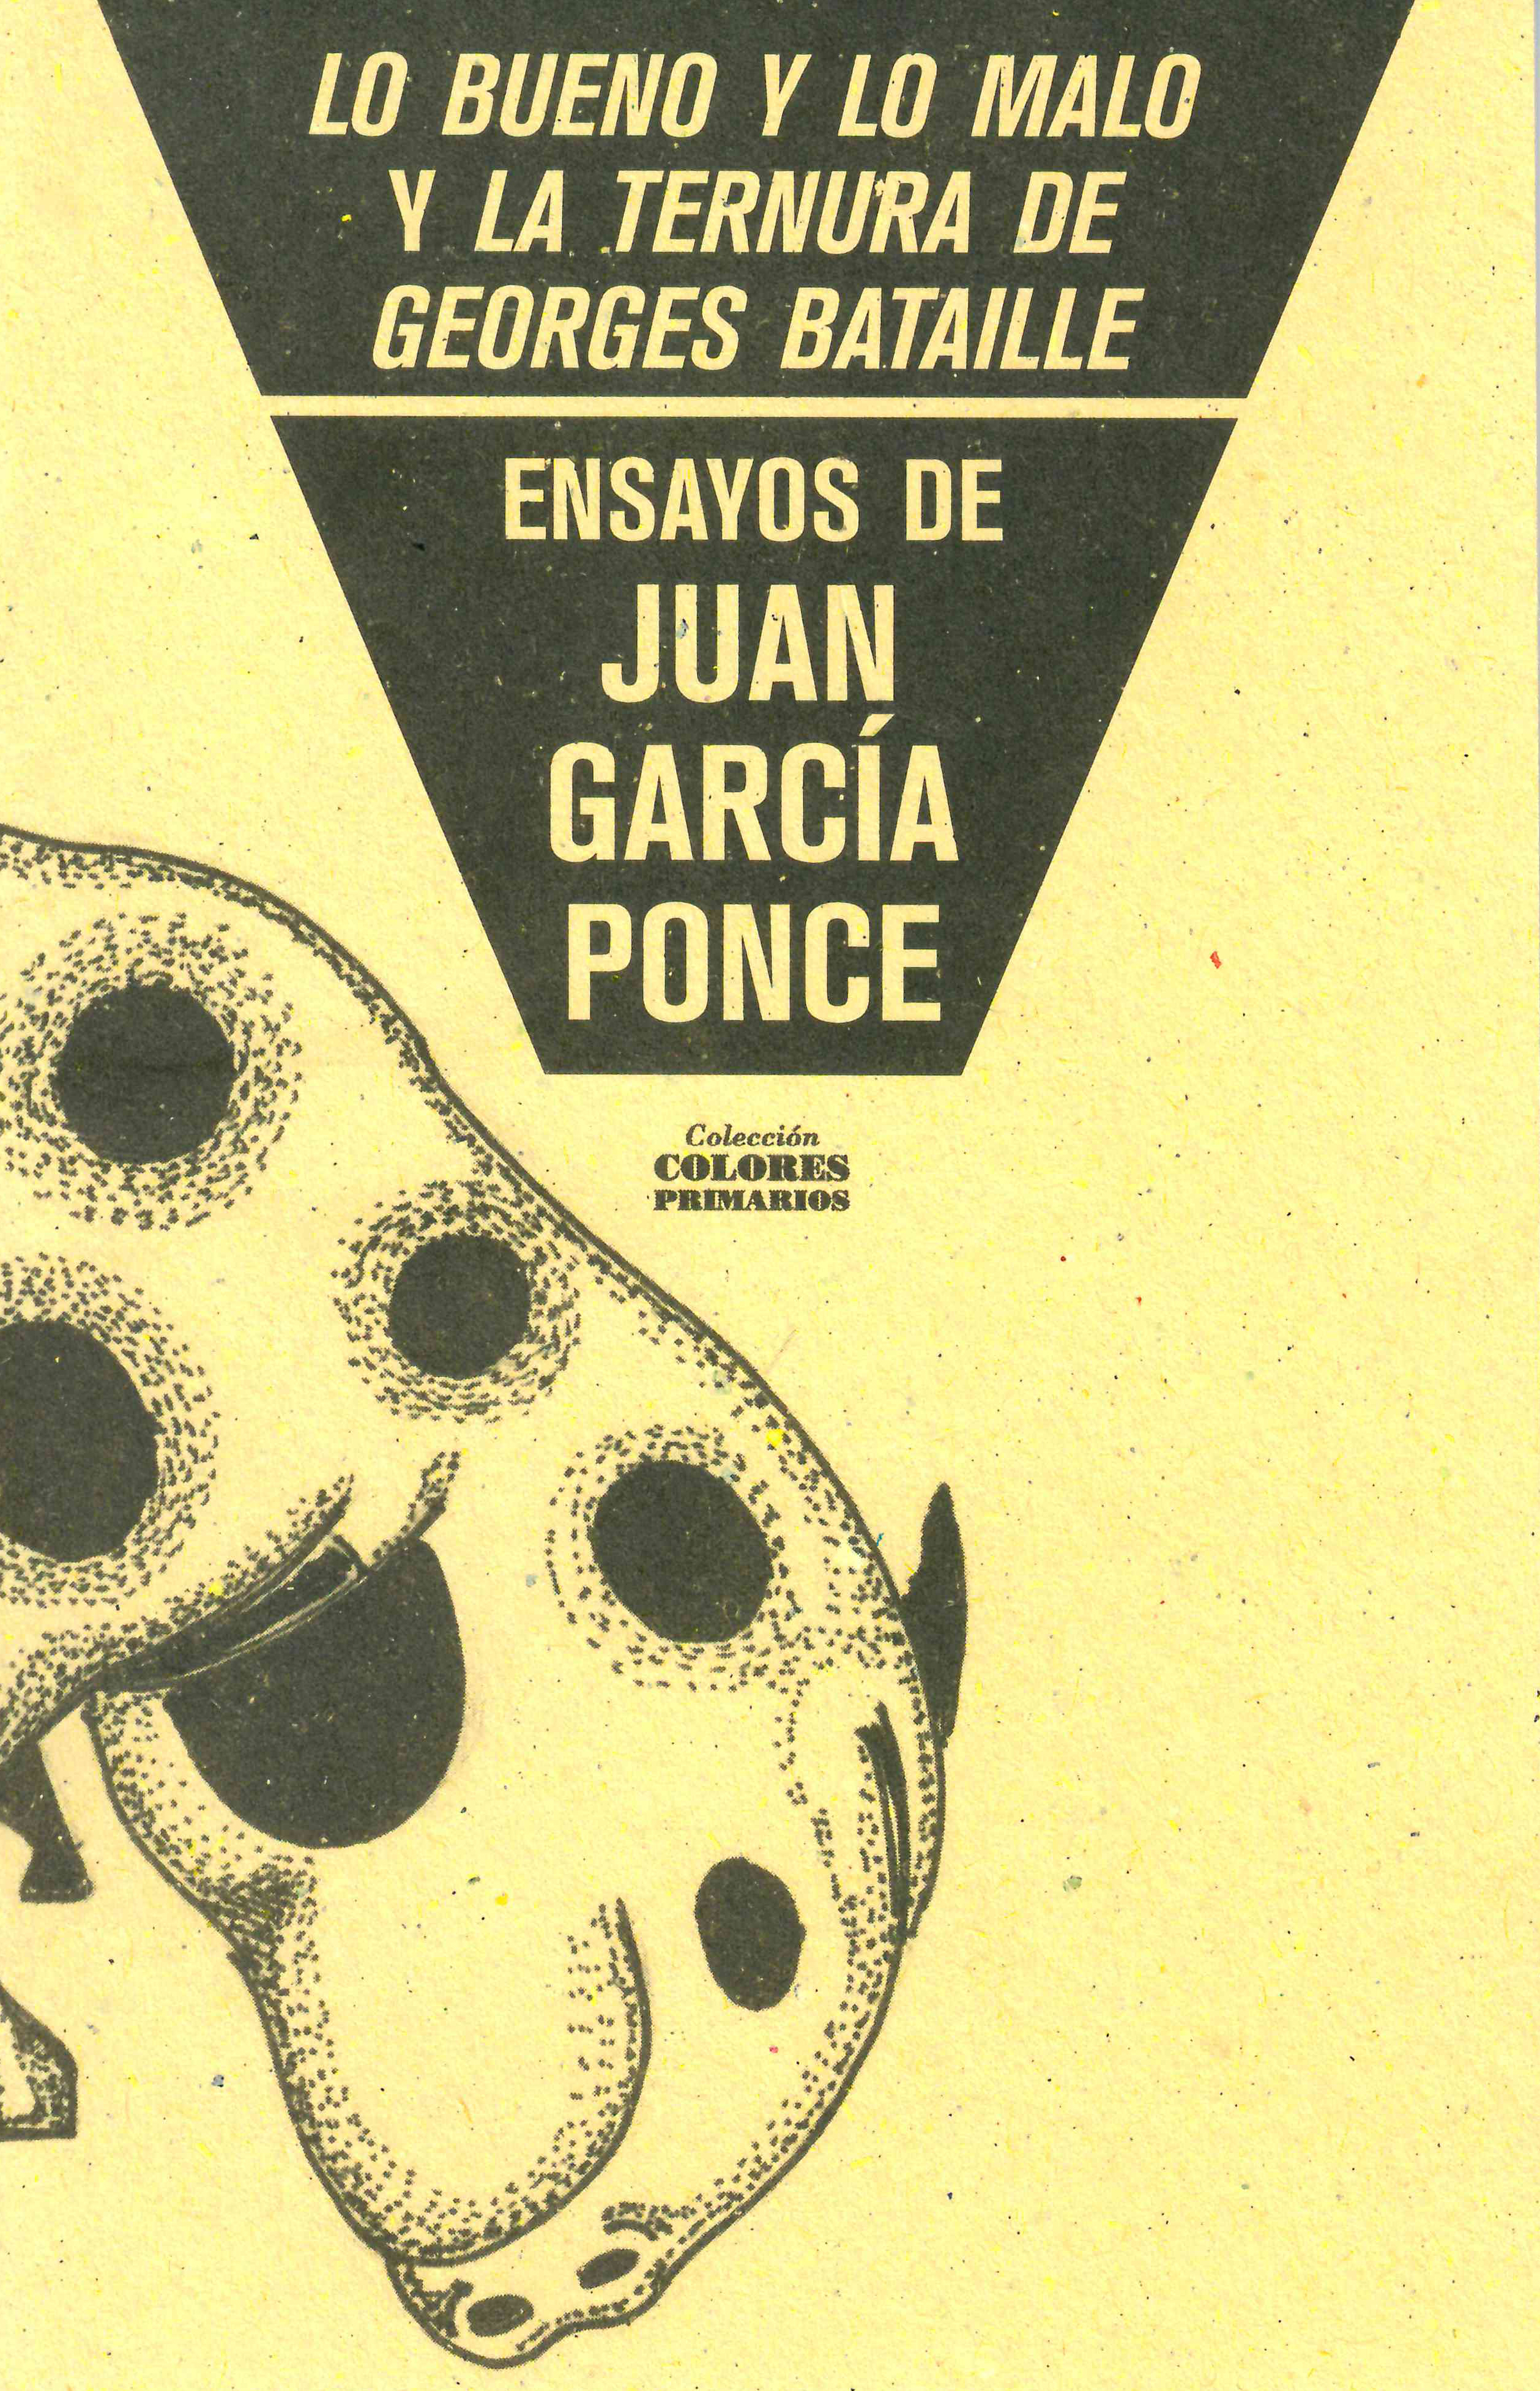 Juan García Ponce